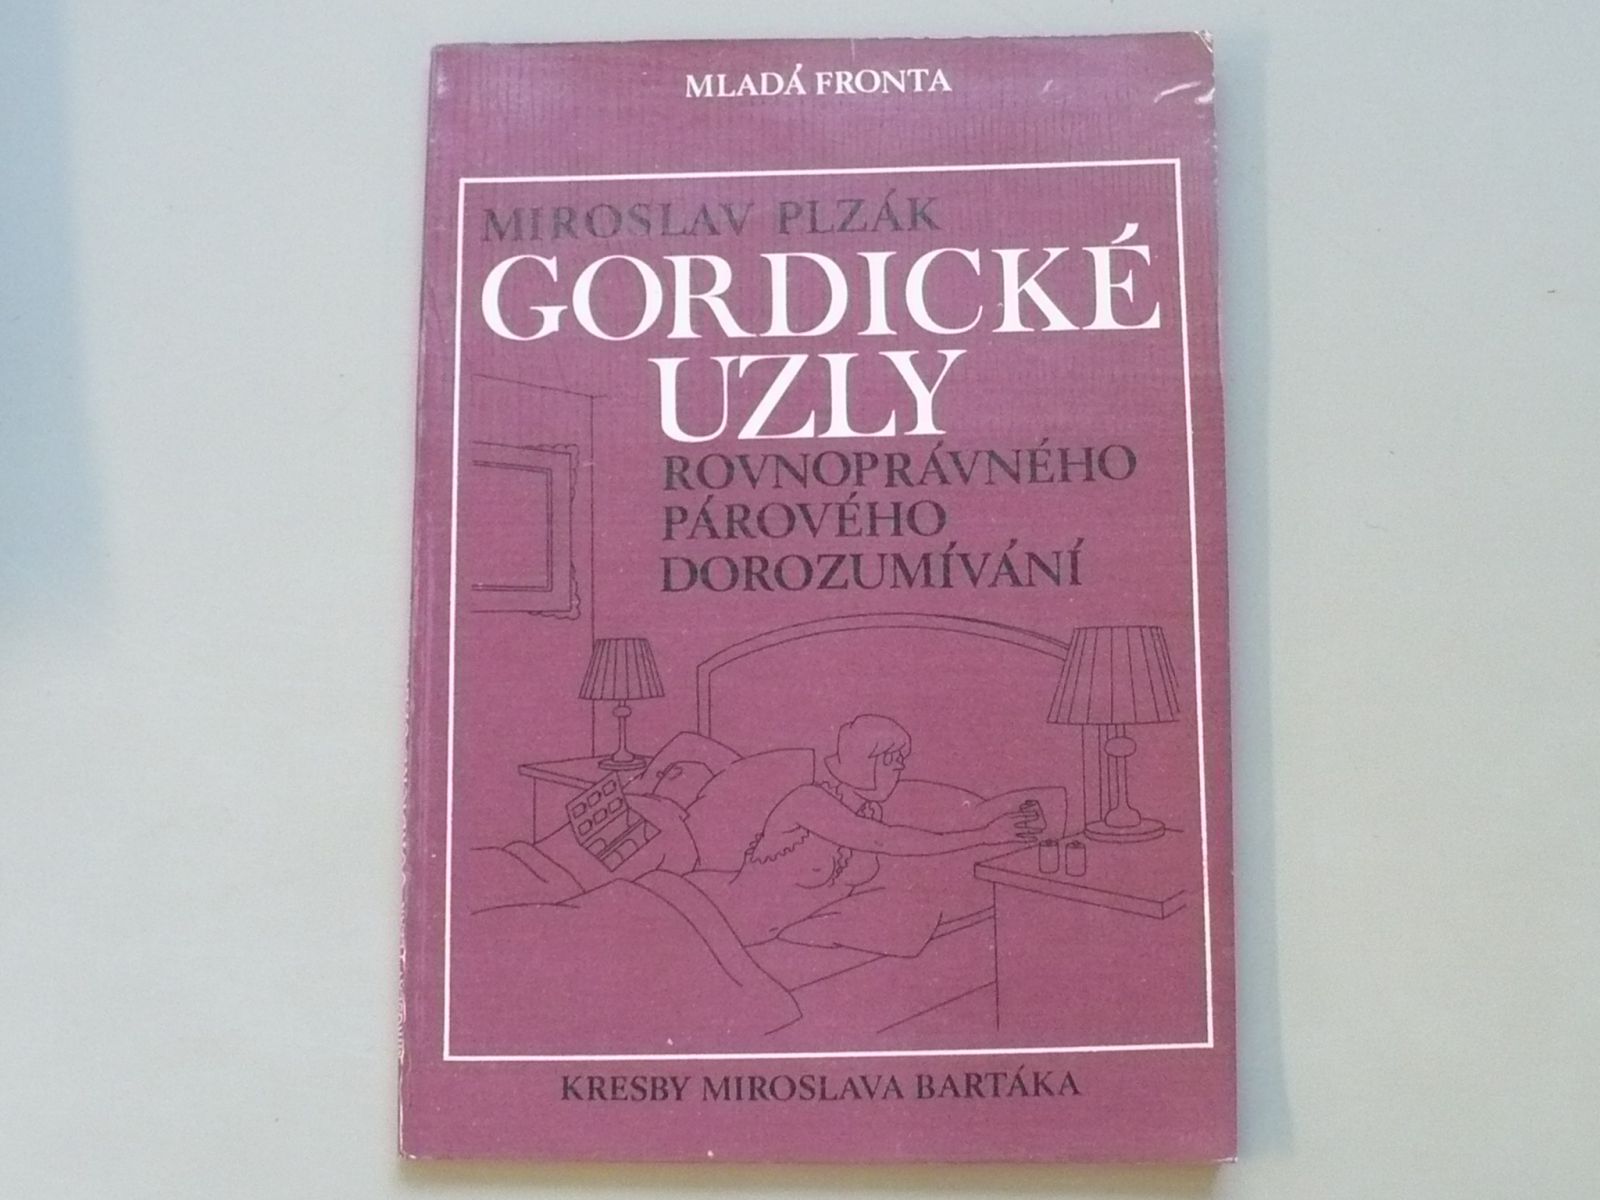 Miroslav Plzák - Gordické uzly rovnoprávného párového dorozumívání (1986)